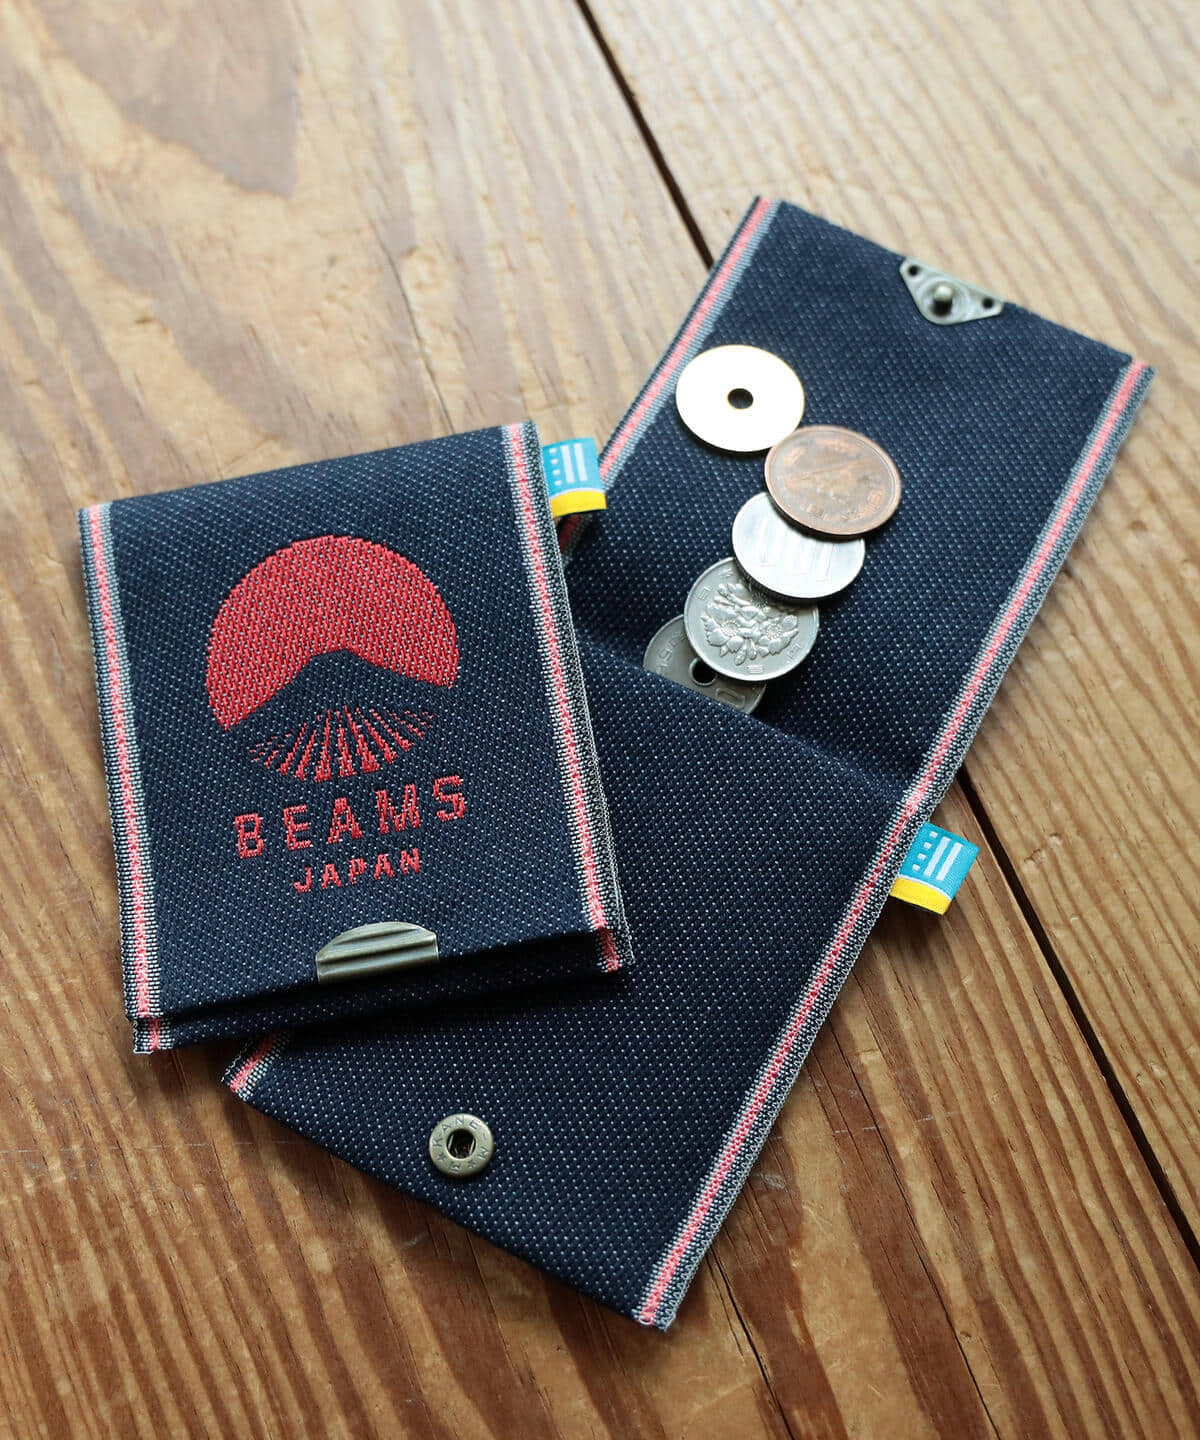 BEAMS JAPAN（ビームス ジャパン）高田織物 × BEAMS JAPAN